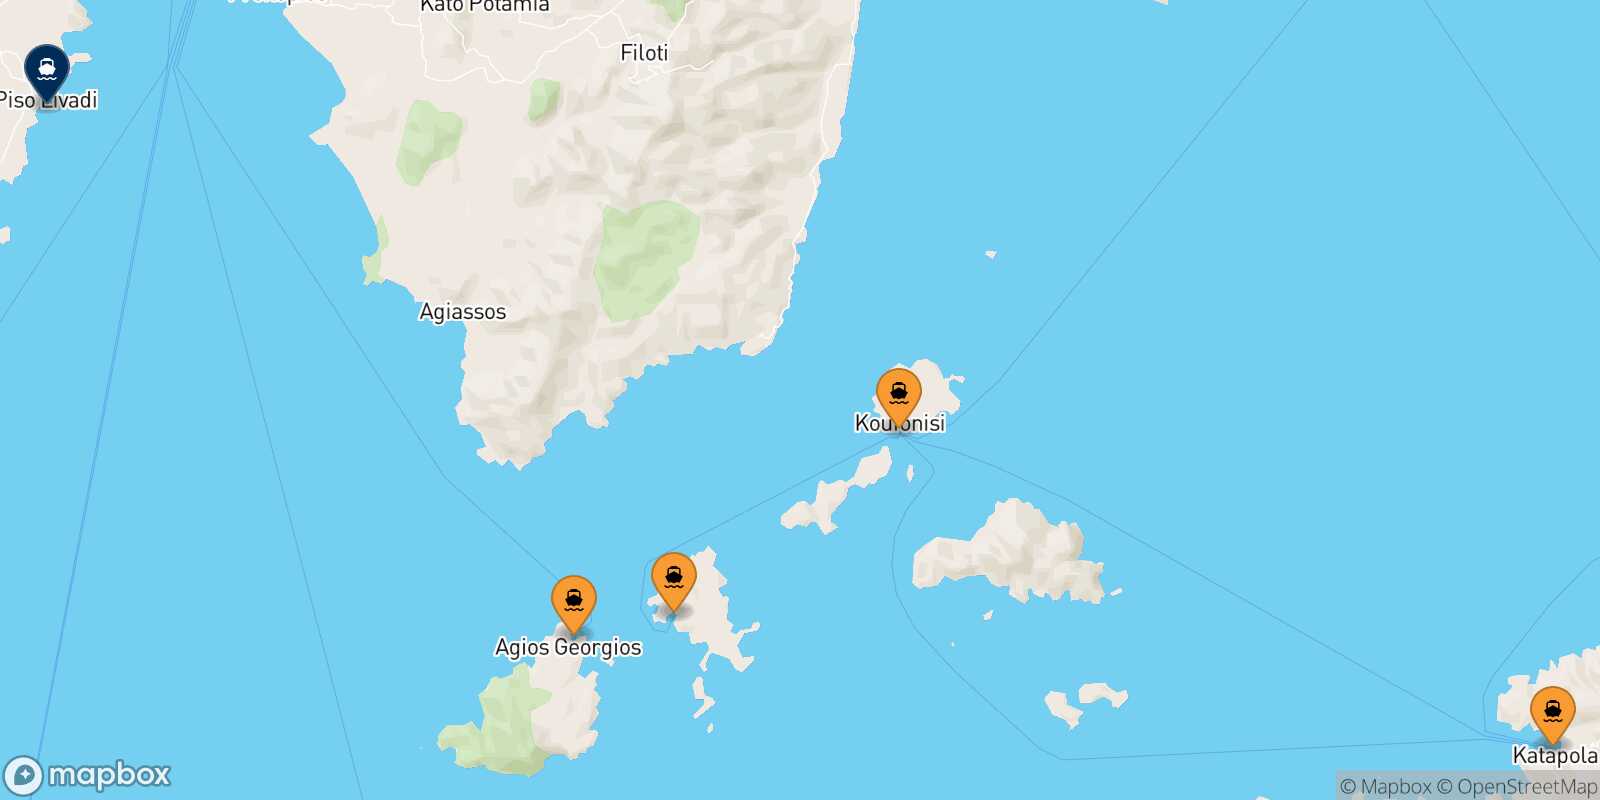 Mappa dei porti collegati con  Piso Livadi (Paros)